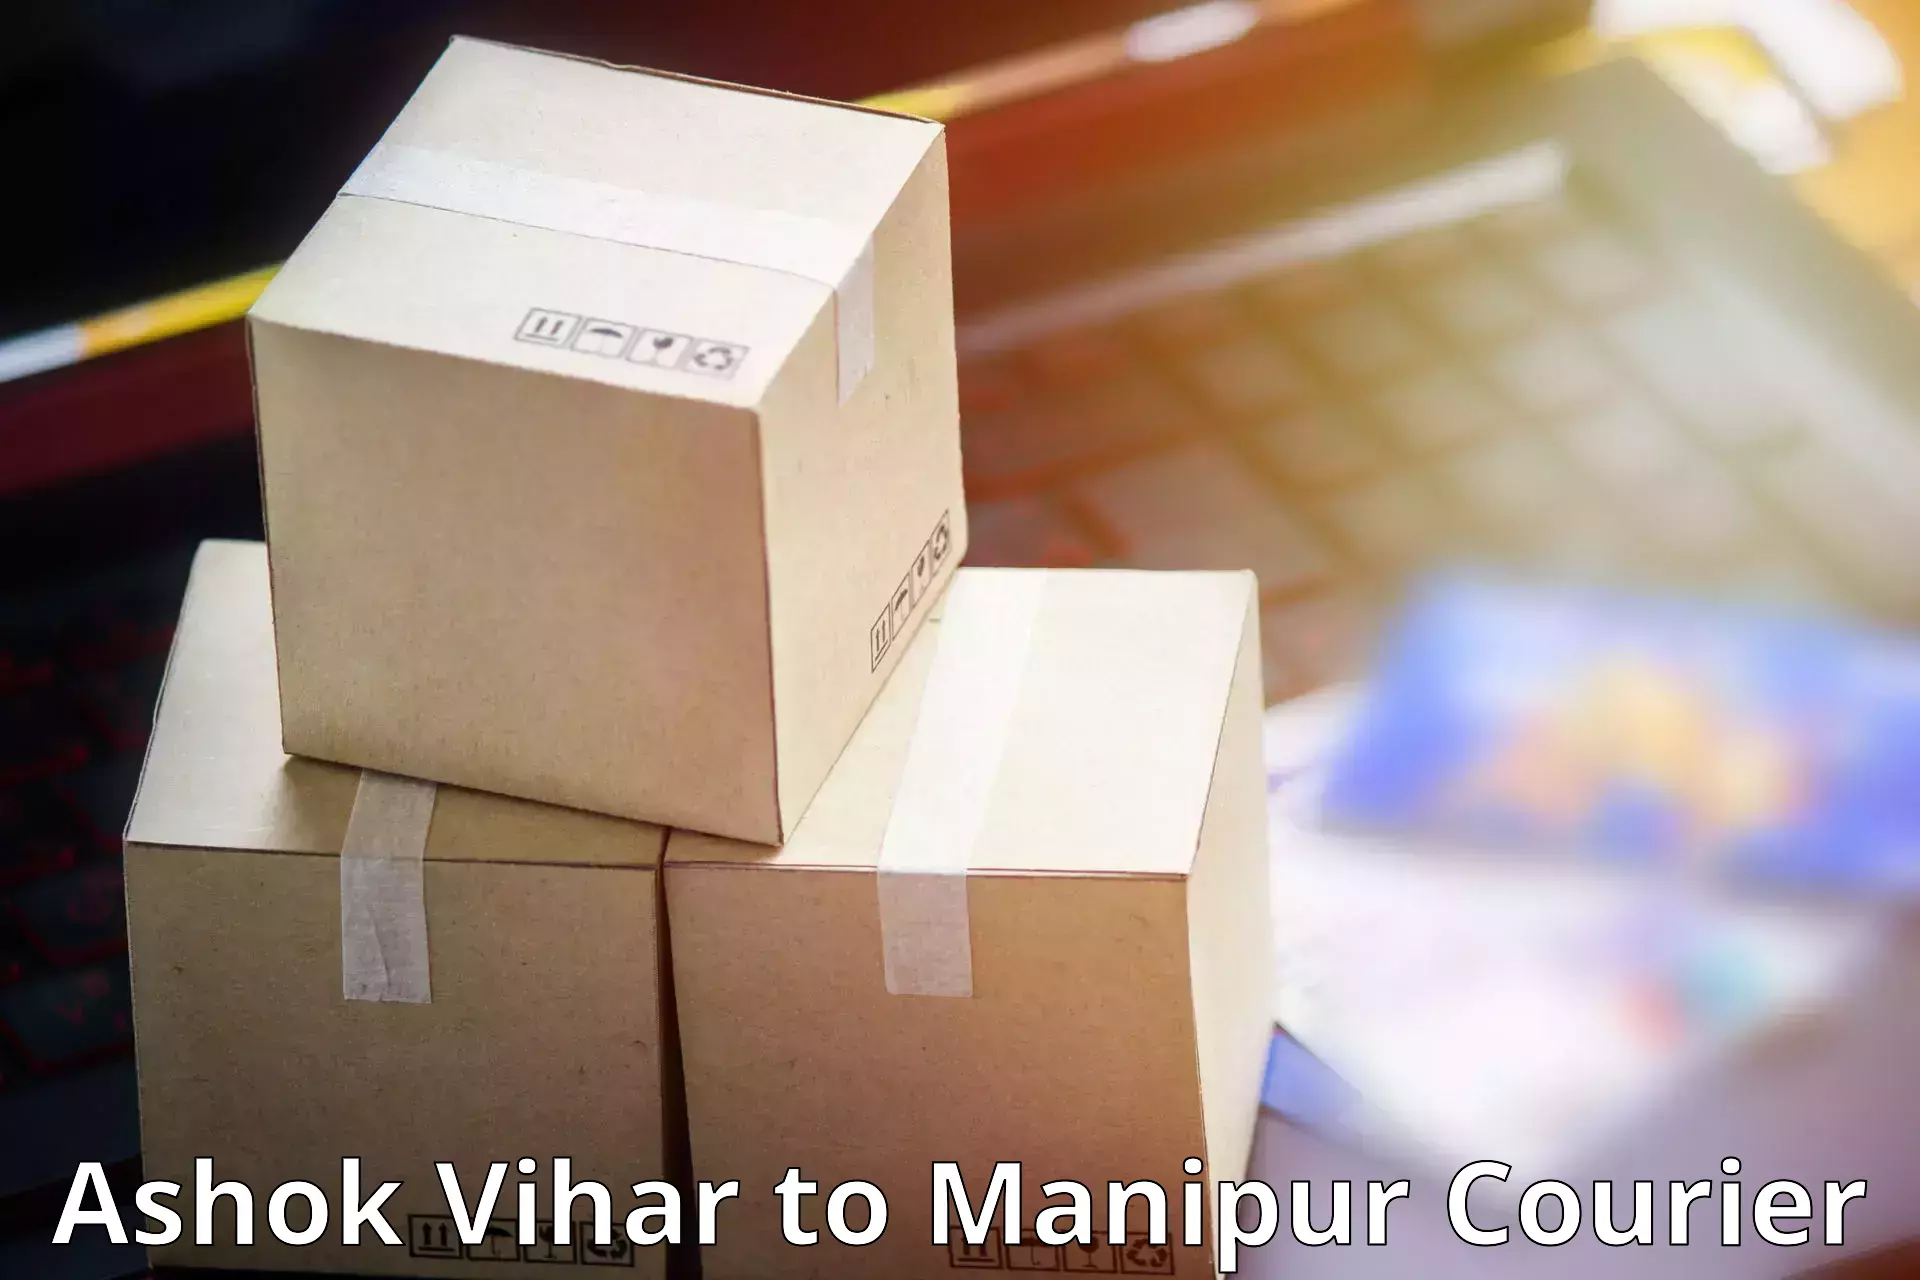 High-speed parcel service Ashok Vihar to Moirang